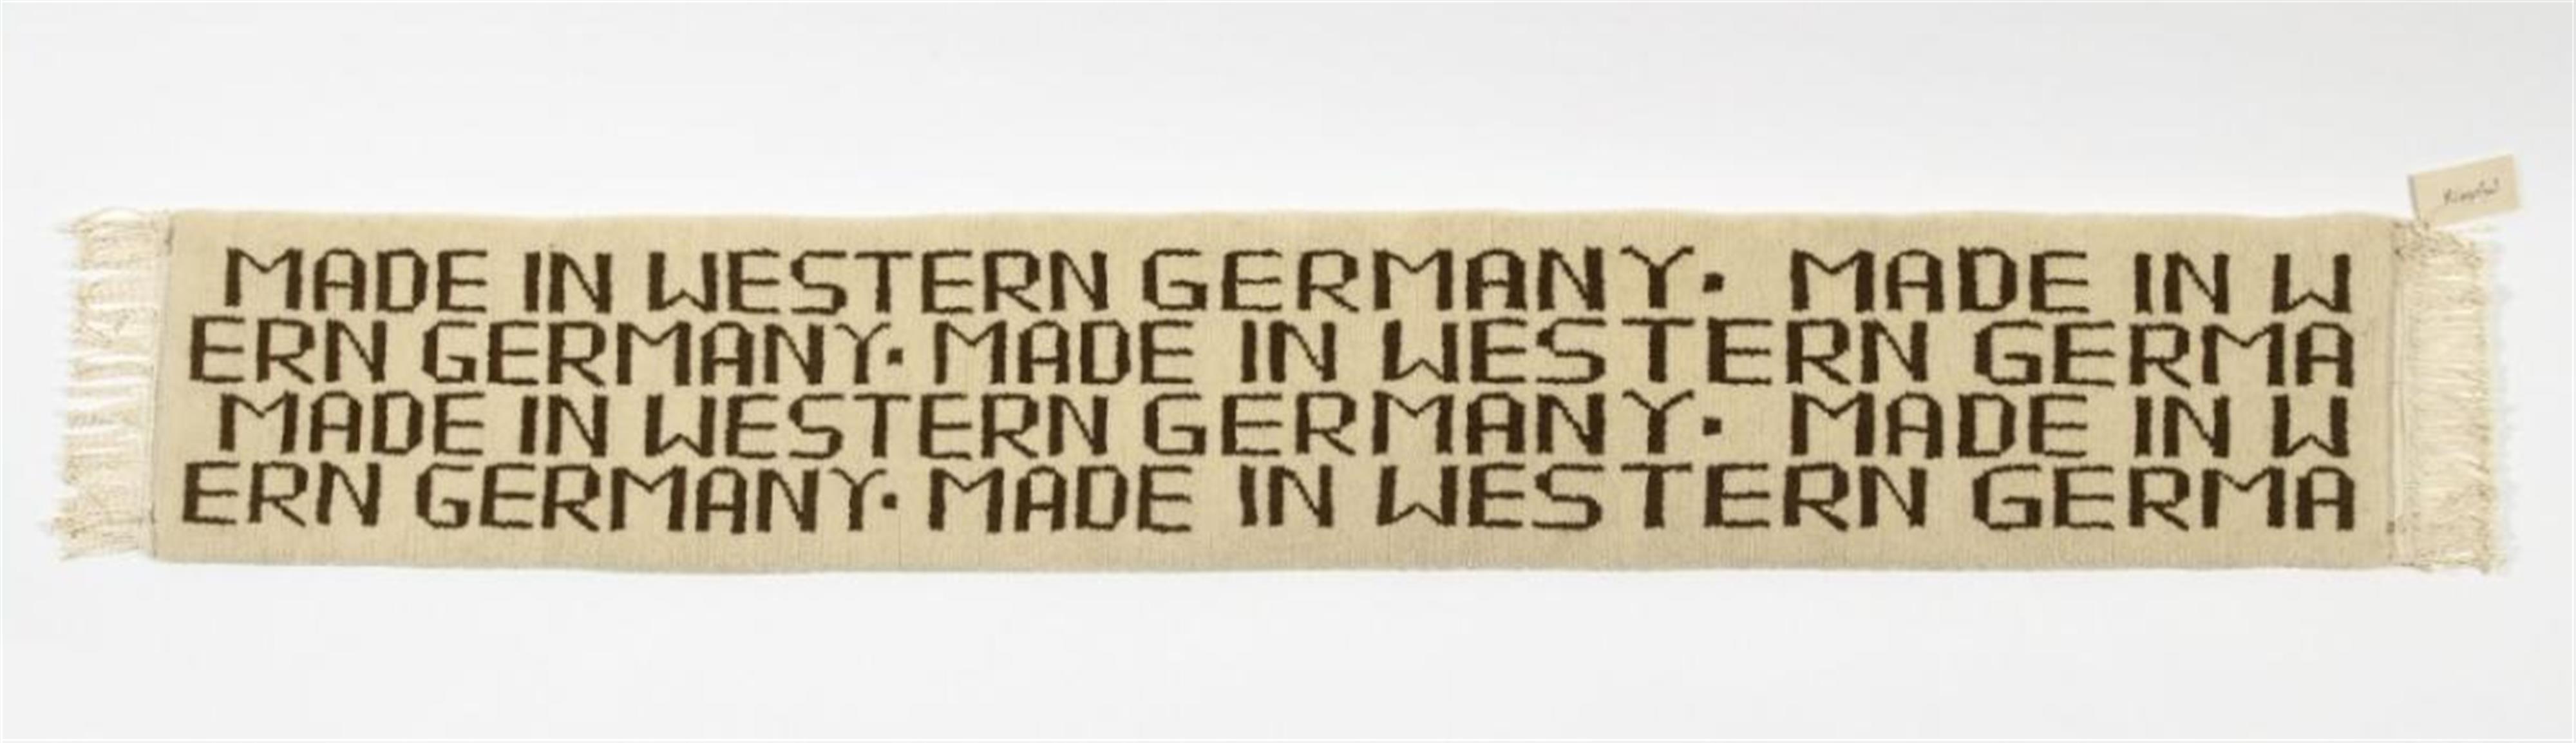 Rosemarie Trockel - Made in Western Germany - image-1